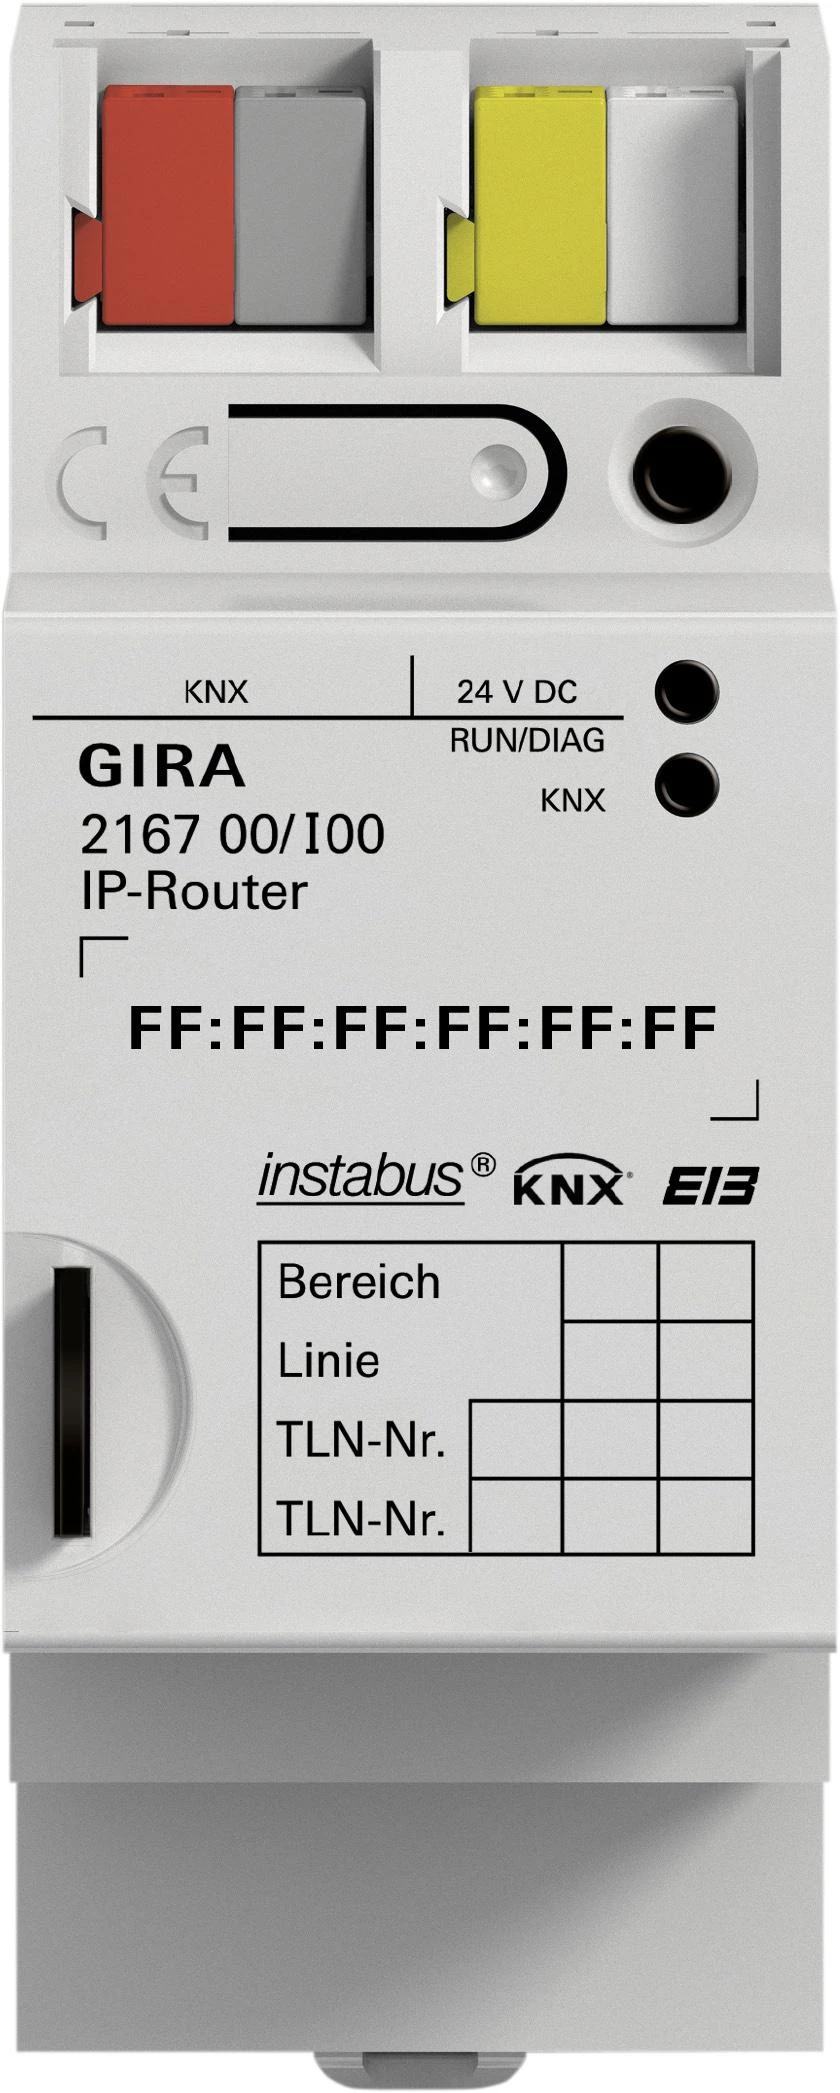  артикул 216700 название Gira Instabus IP роутер KNX/EIB REG